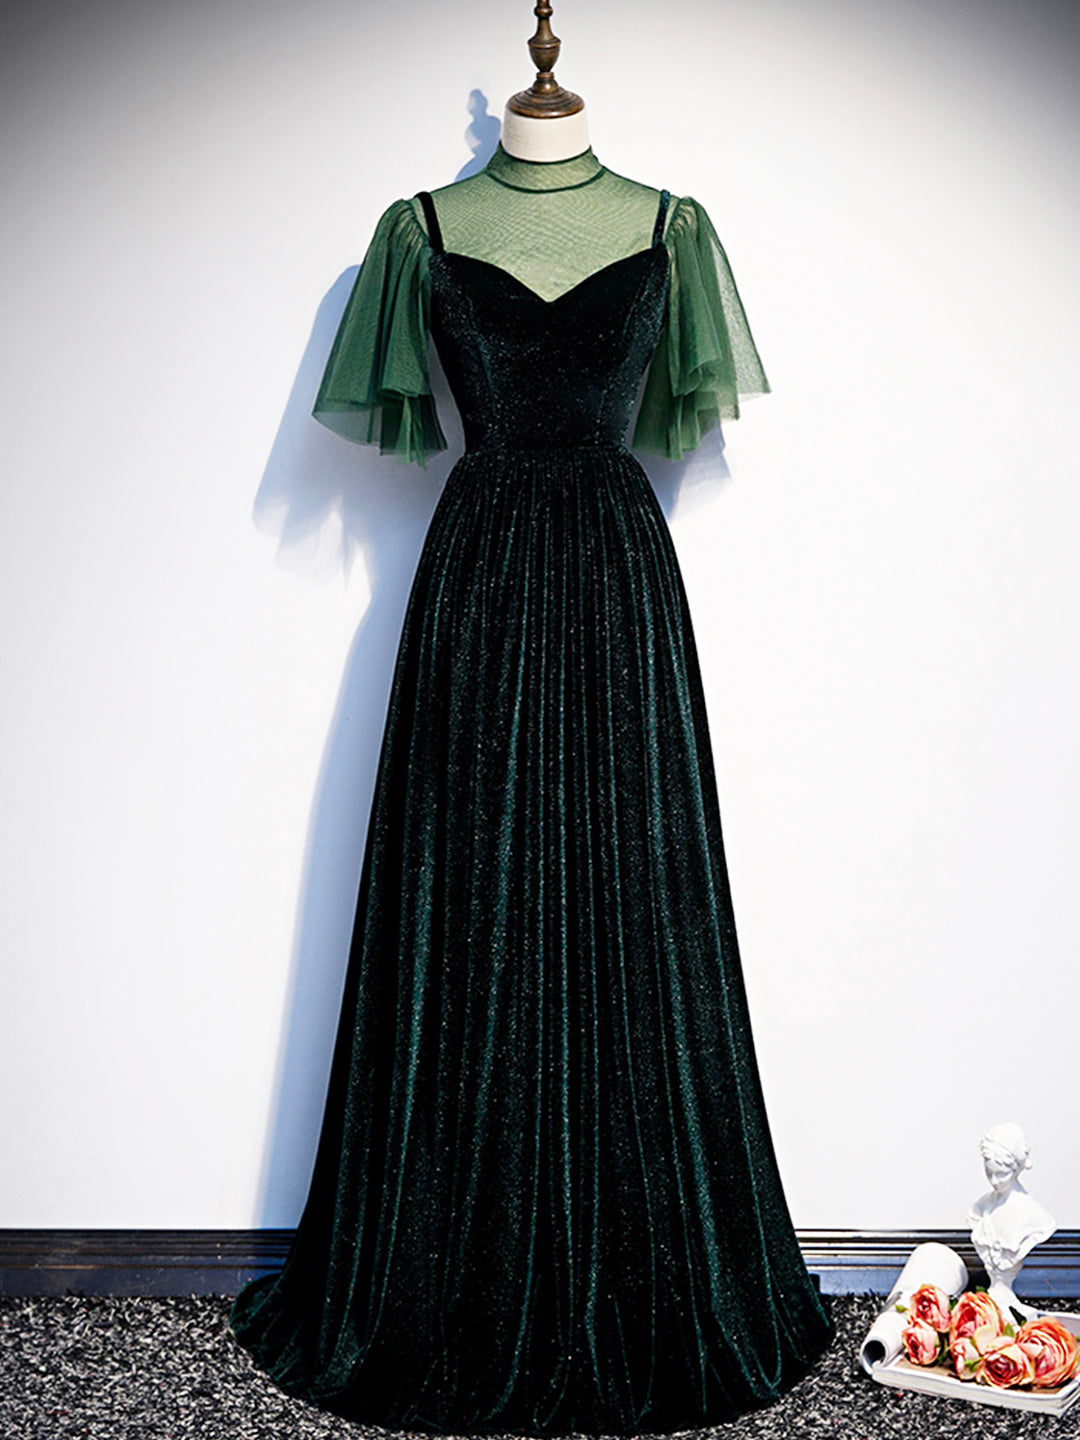 Green Velvet Long Corset Prom Dress, Elegant A-Line Green Evening Dress outfit, Prom Dress Corset Ball Gown